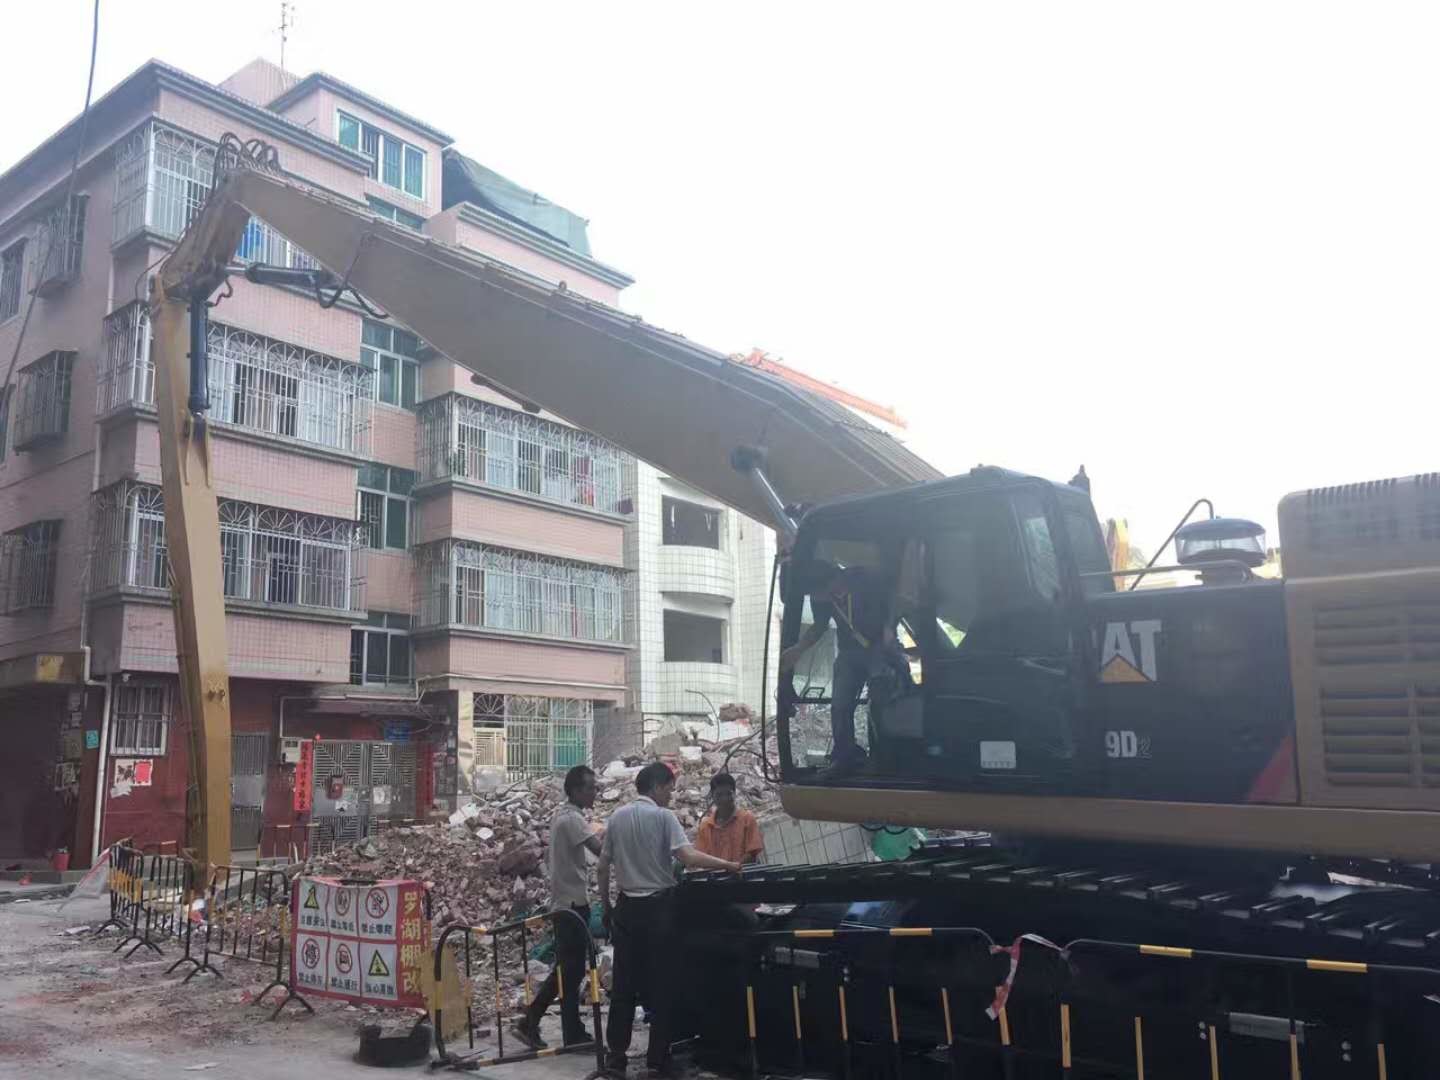  CAT349 Excavator 26M Demilition Boom , Multipurpose  Equipment  Plant Attachment for Demolish Construction